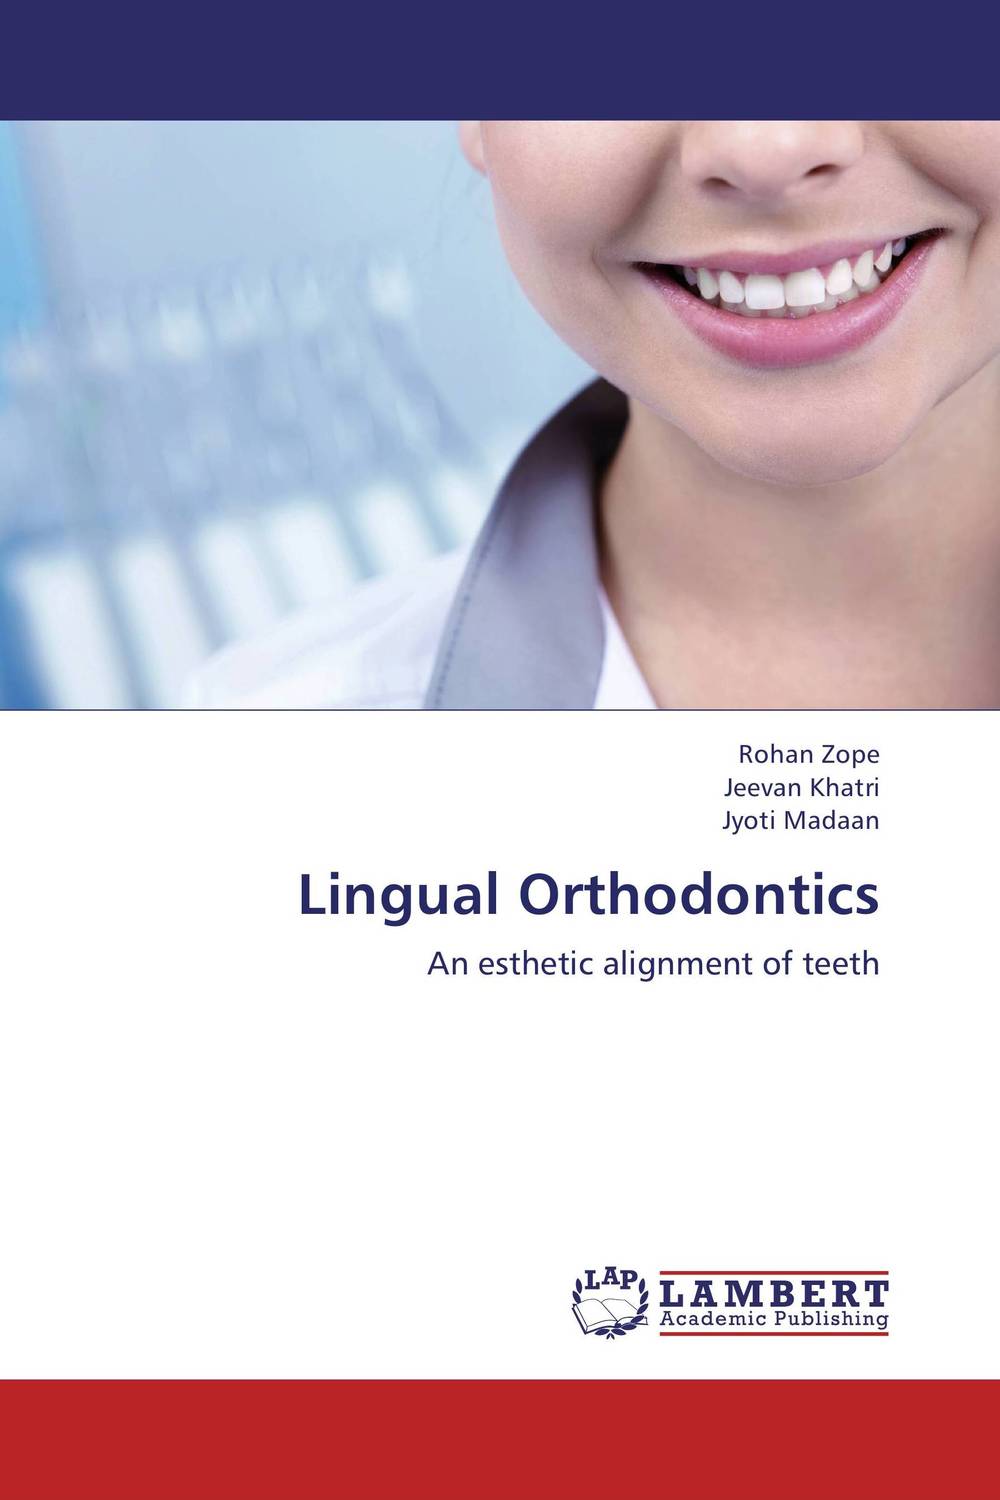 фото Lingual Orthodontics Lap lambert academic publishing